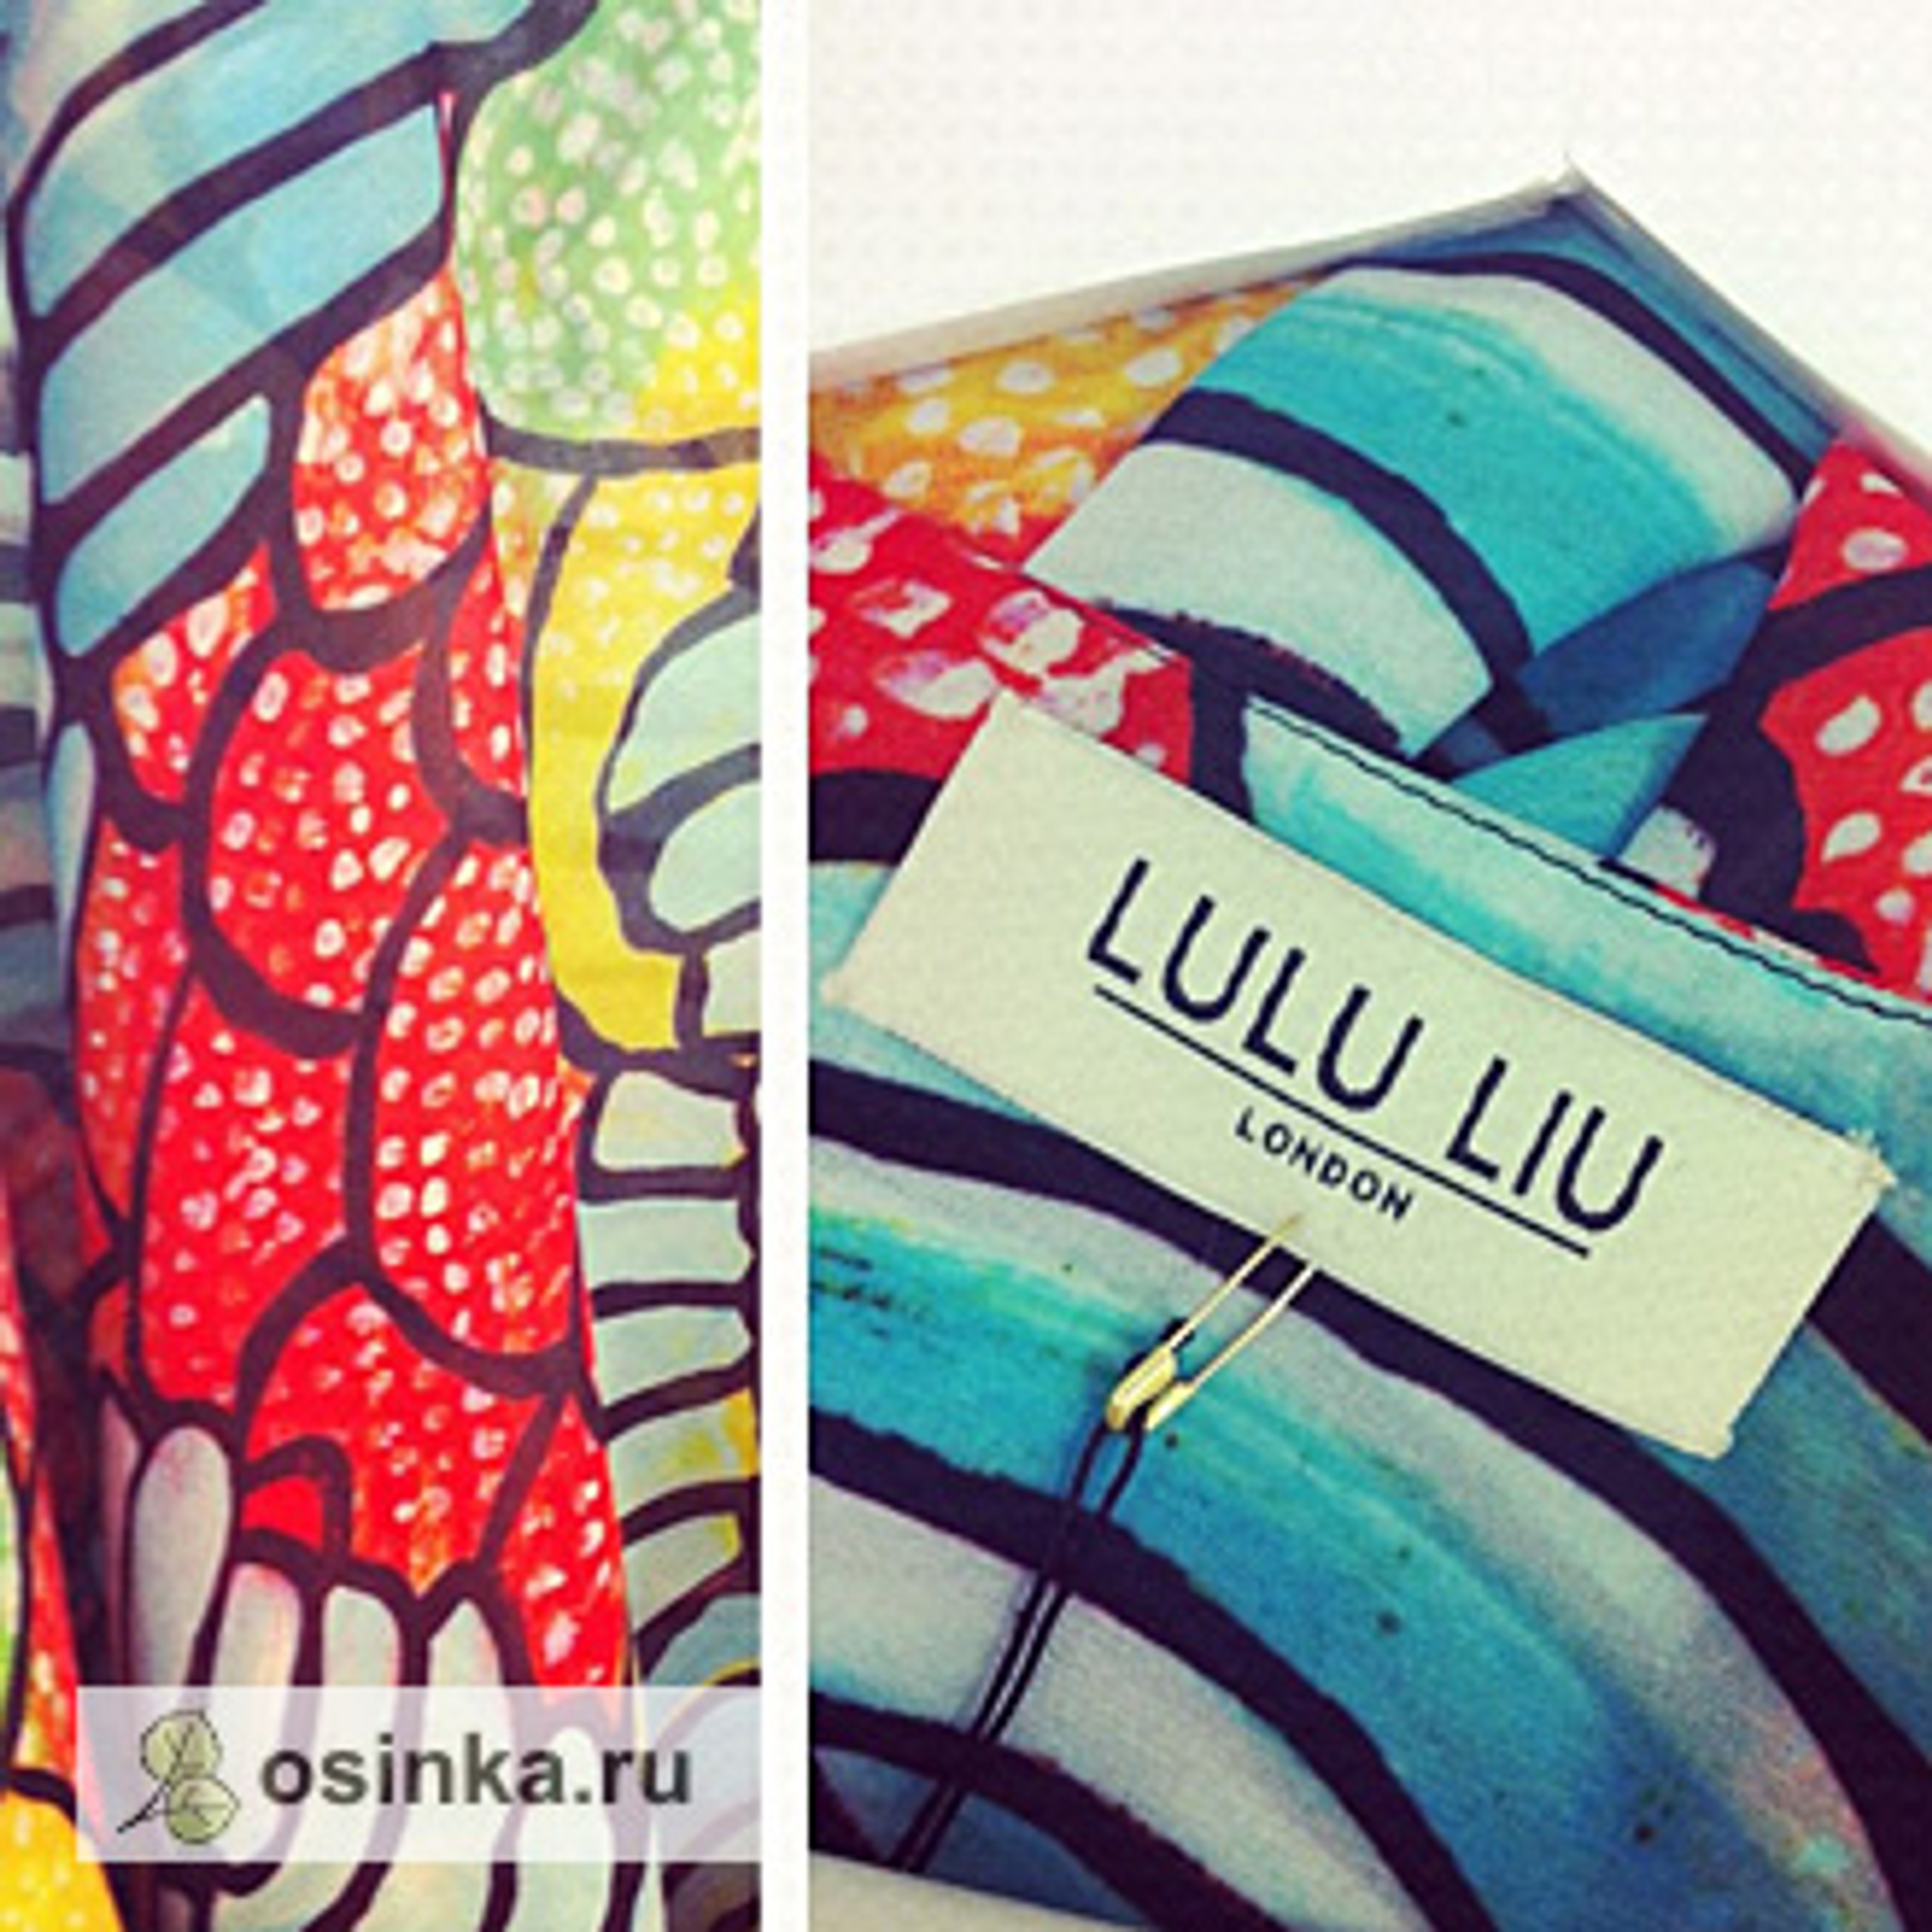 Образцы принтов для текстиля, Lulu Liu